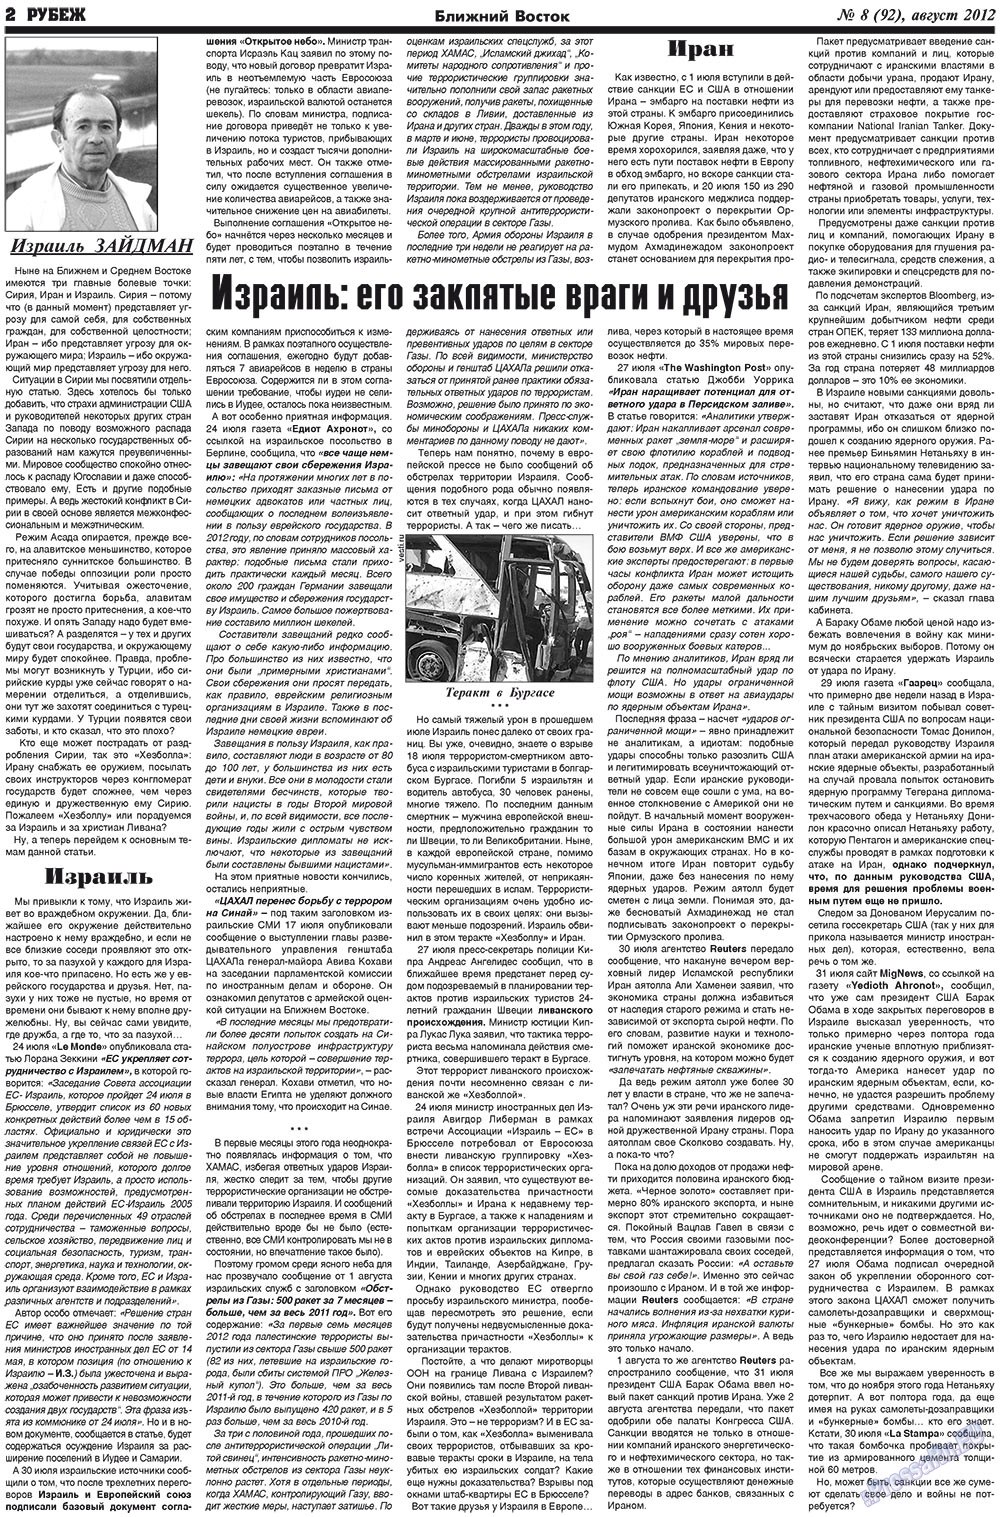 Рубеж (газета). 2012 год, номер 8, стр. 2